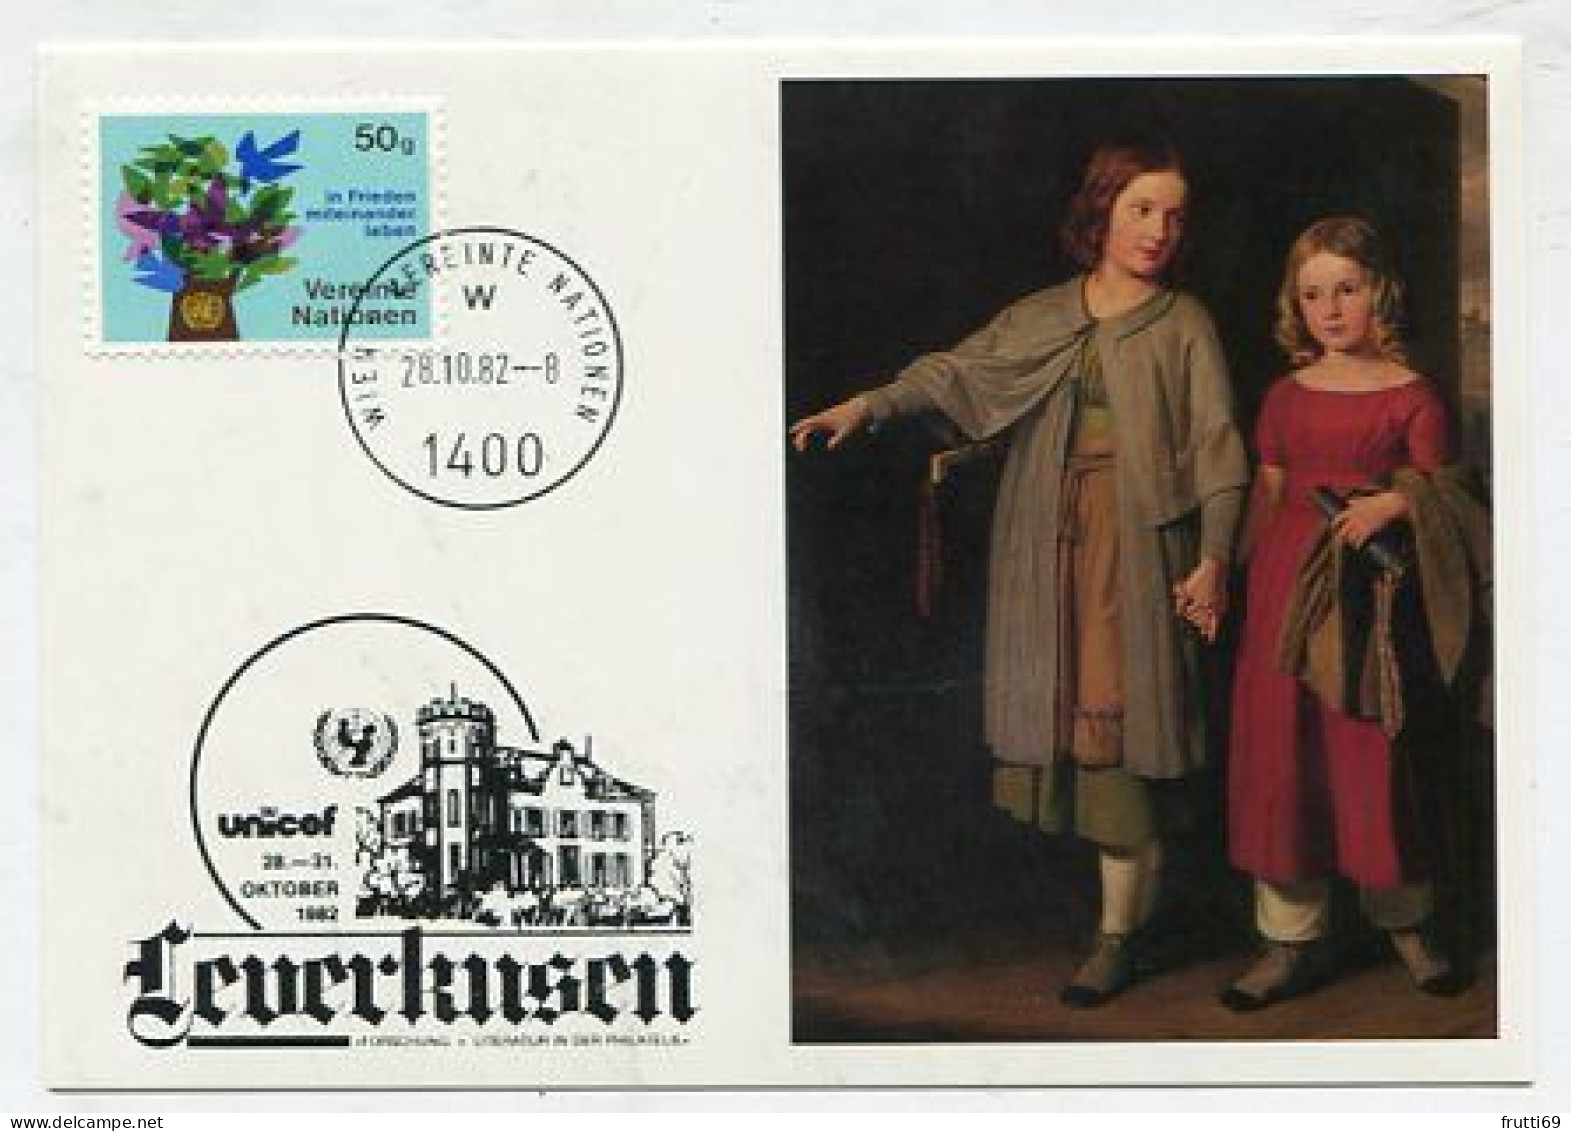 MC 145203 UNO VIENNA - 1982 - UNICEF Leverkusen 1982 - Maximumkaarten